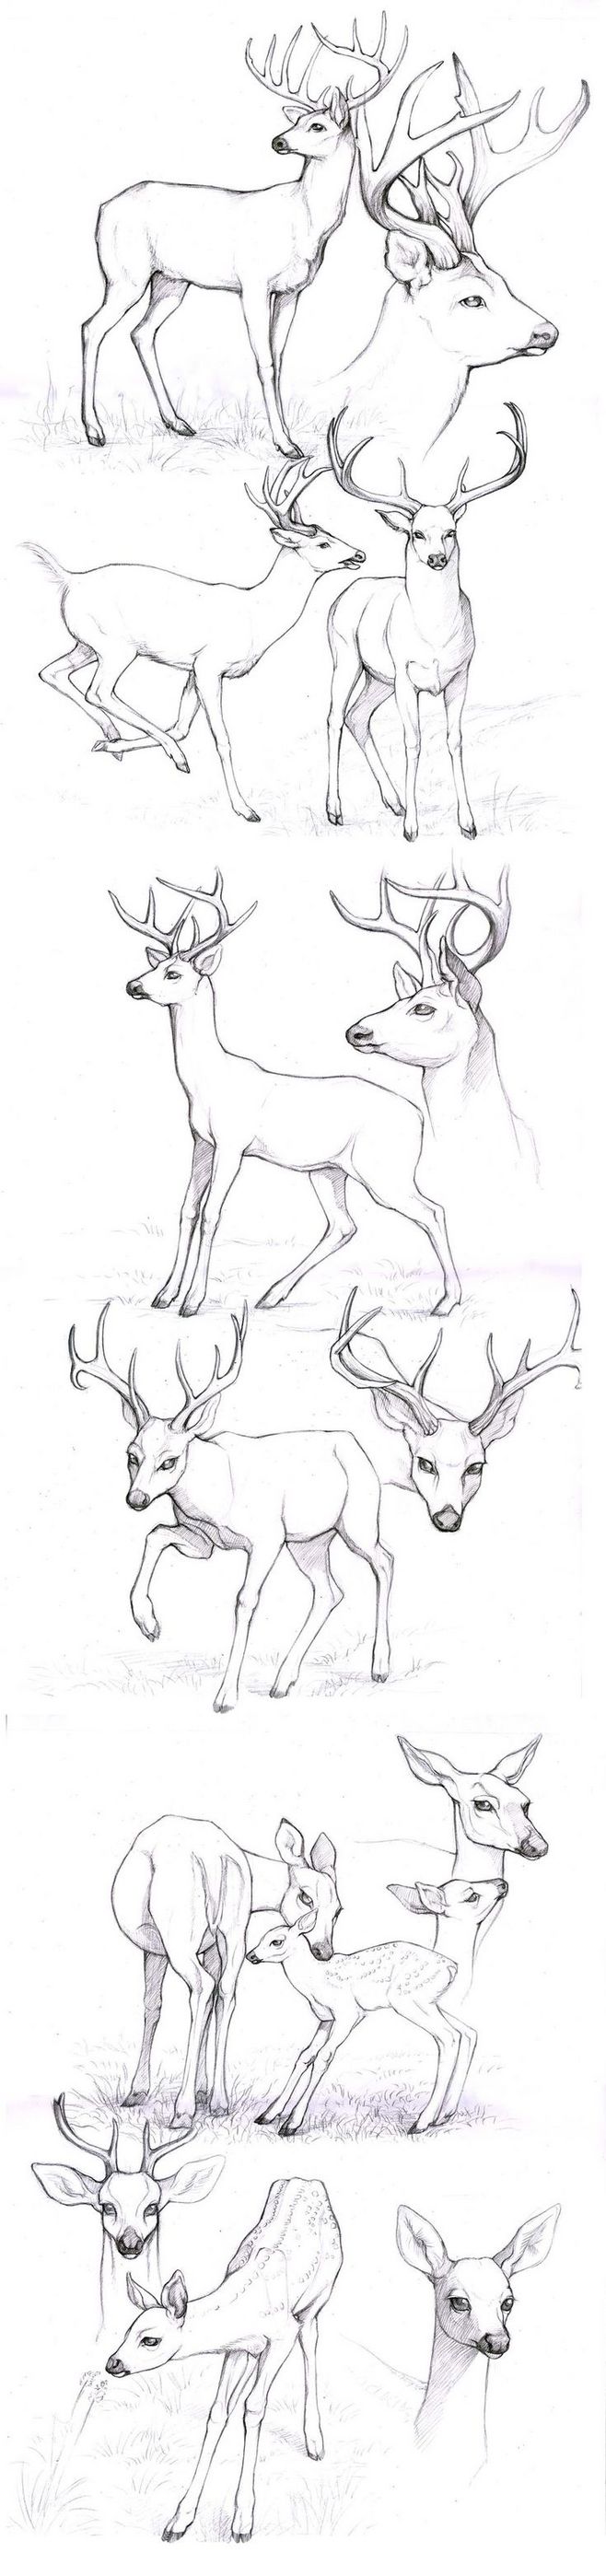 【绘画素材】sketches_deers by anisis on deviantart different